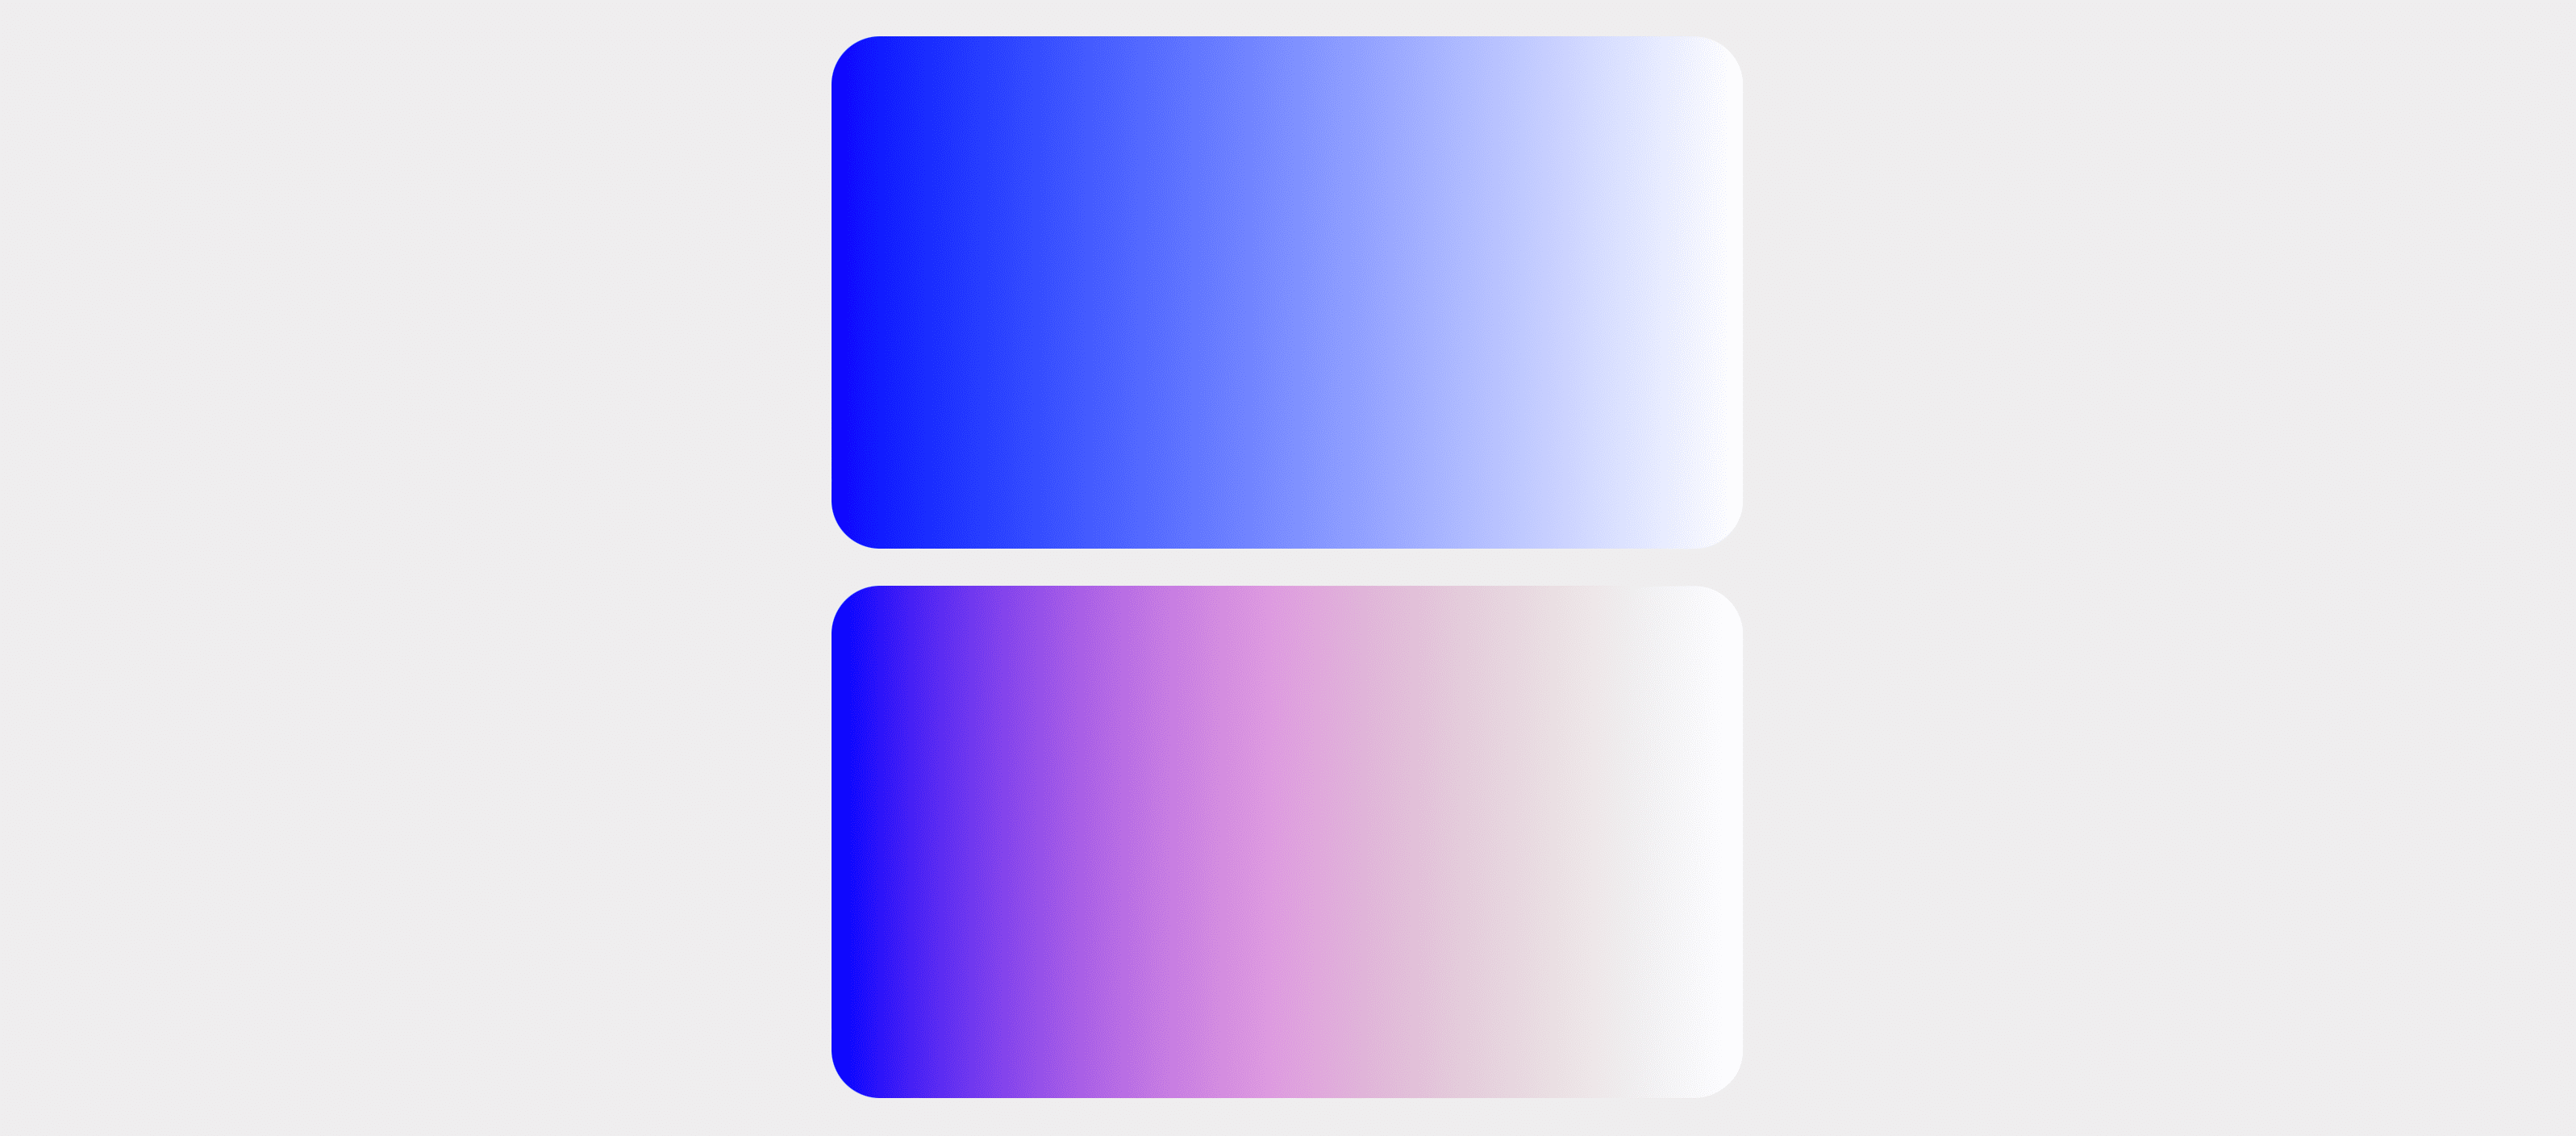 การไล่ระดับสี sRGB แสดงเหนือการไล่ระดับสี HSL